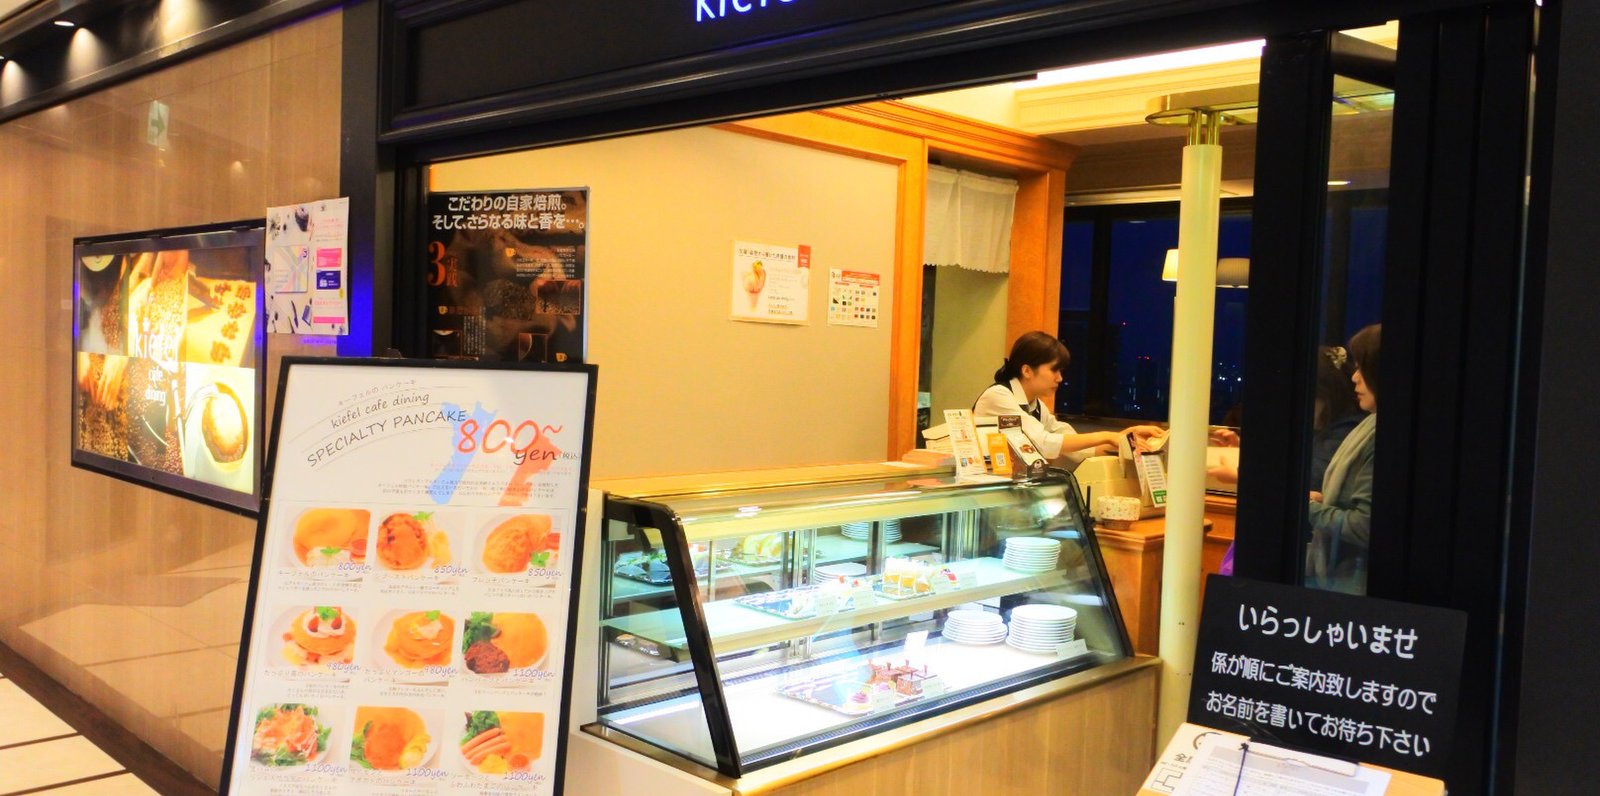 喫茶店 キーフェル 阪急32番街店